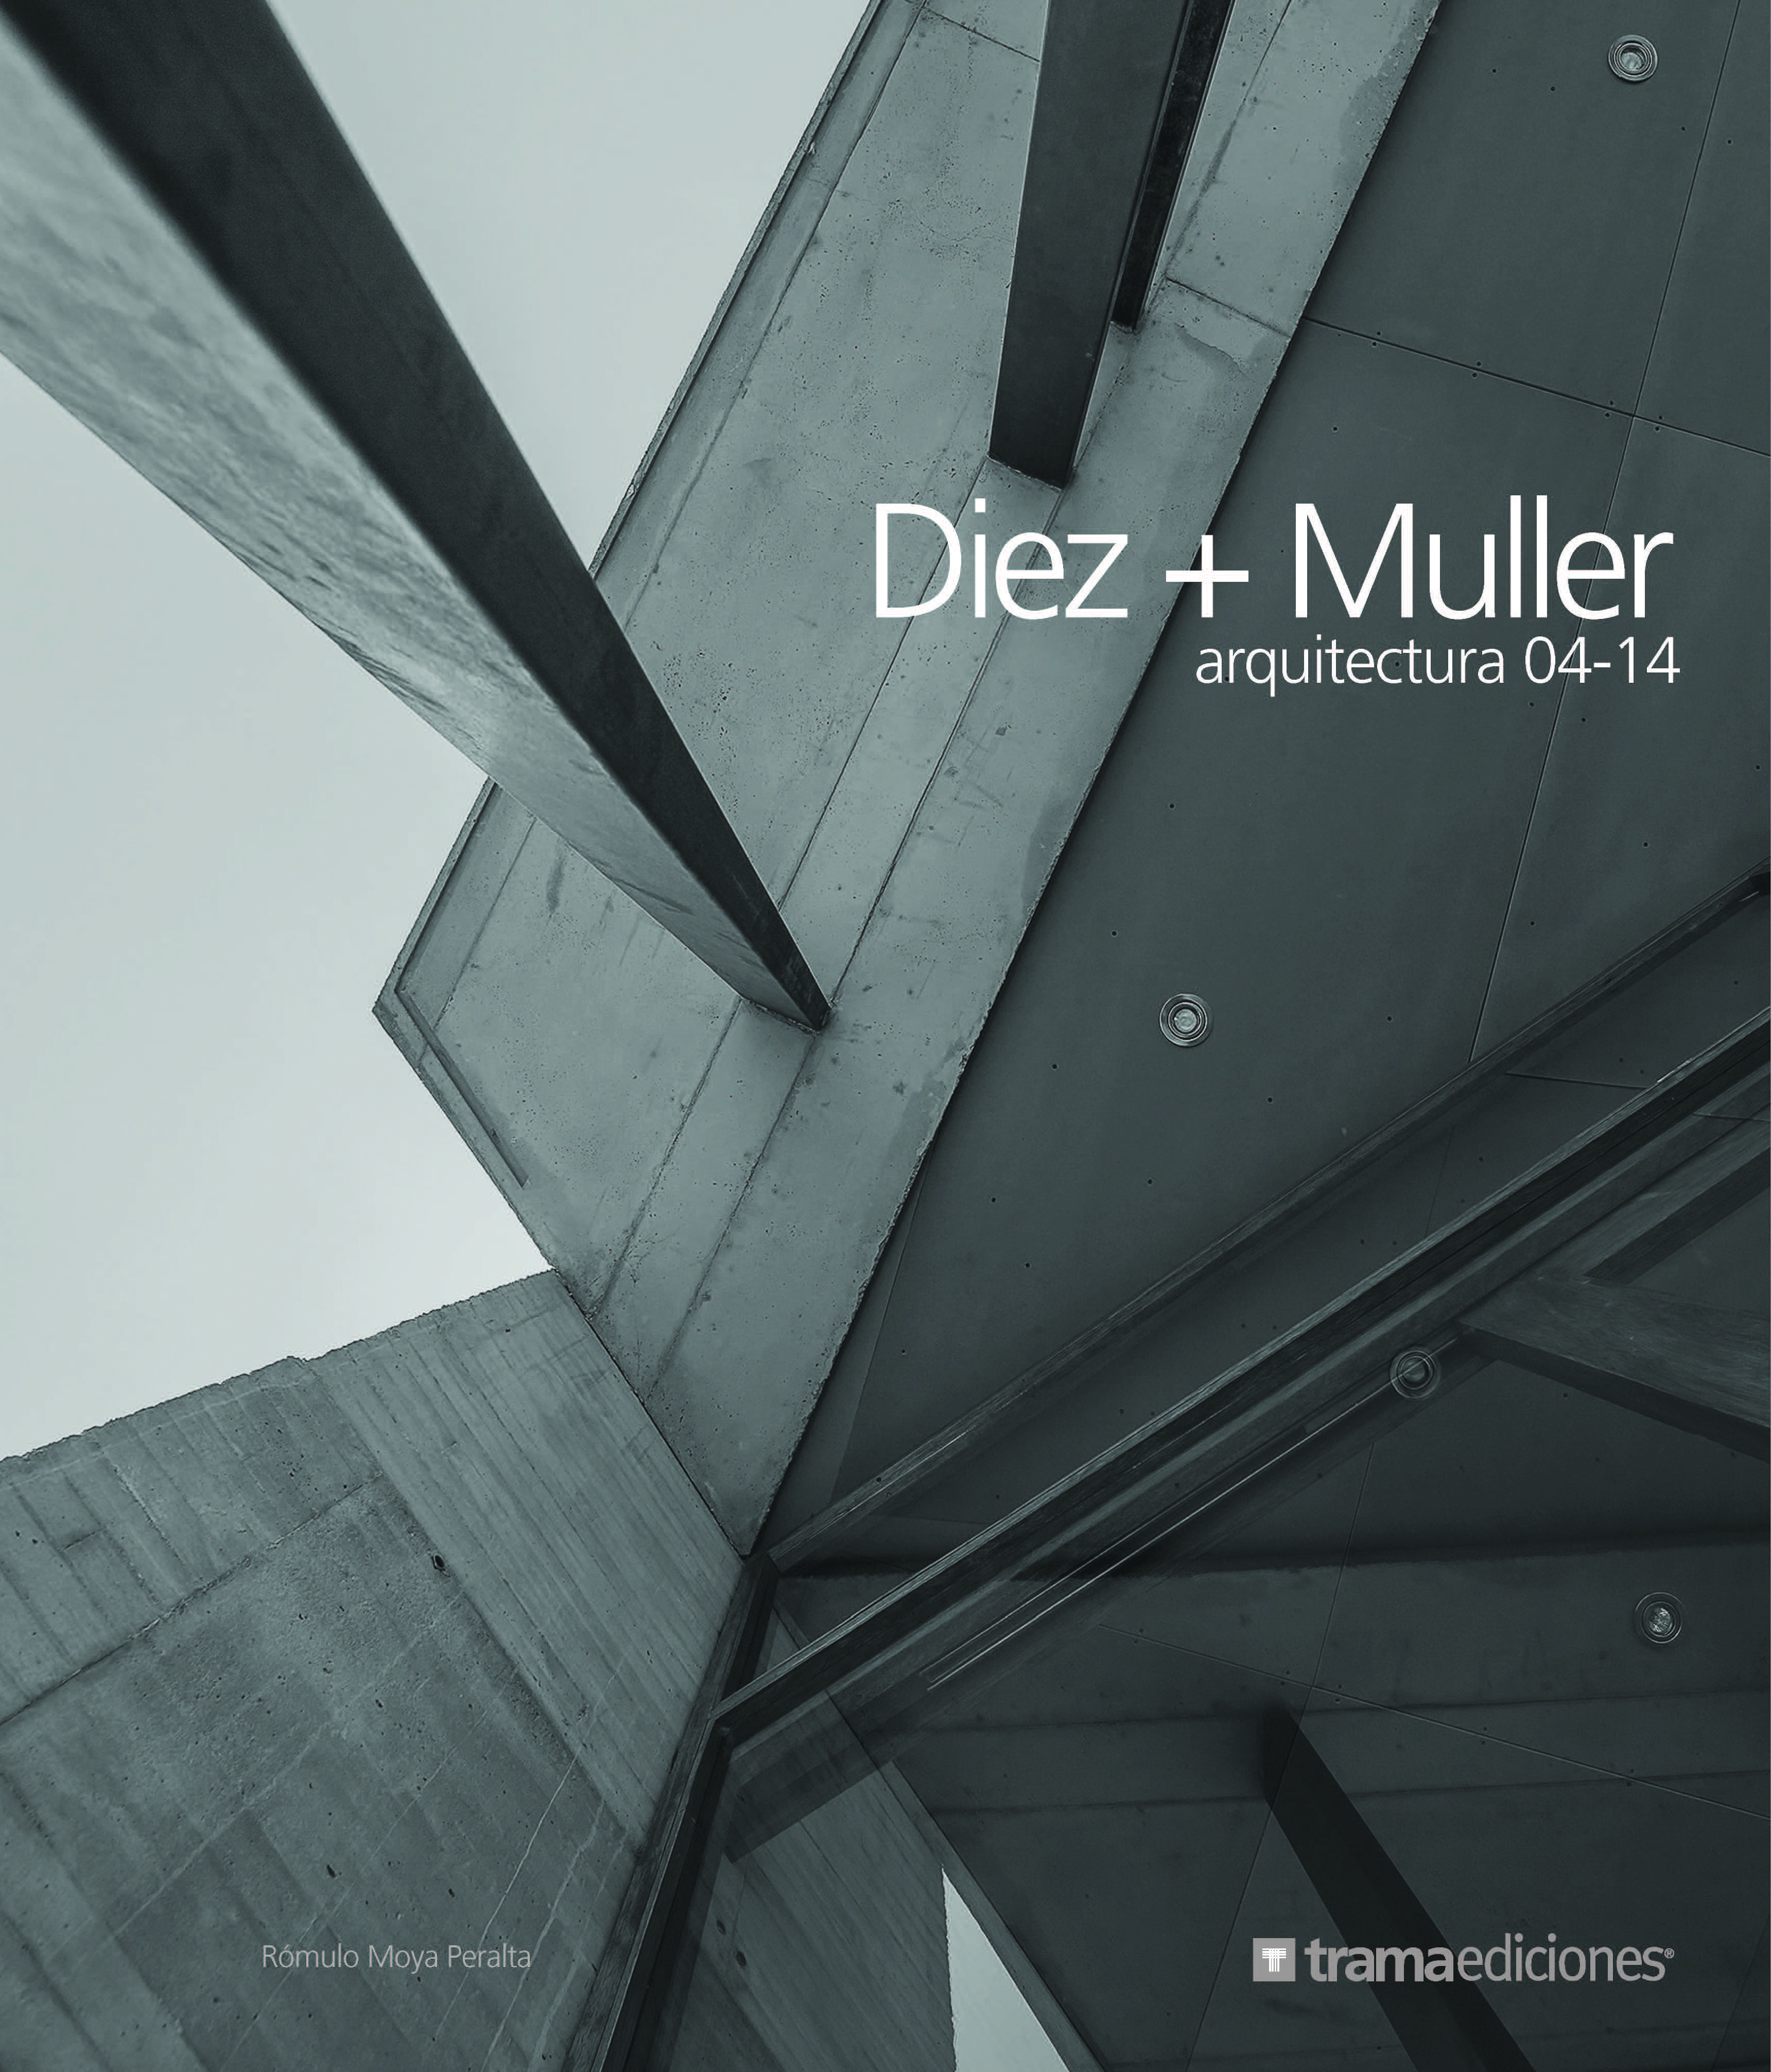 Diez + Muller arquitectura 04-14 